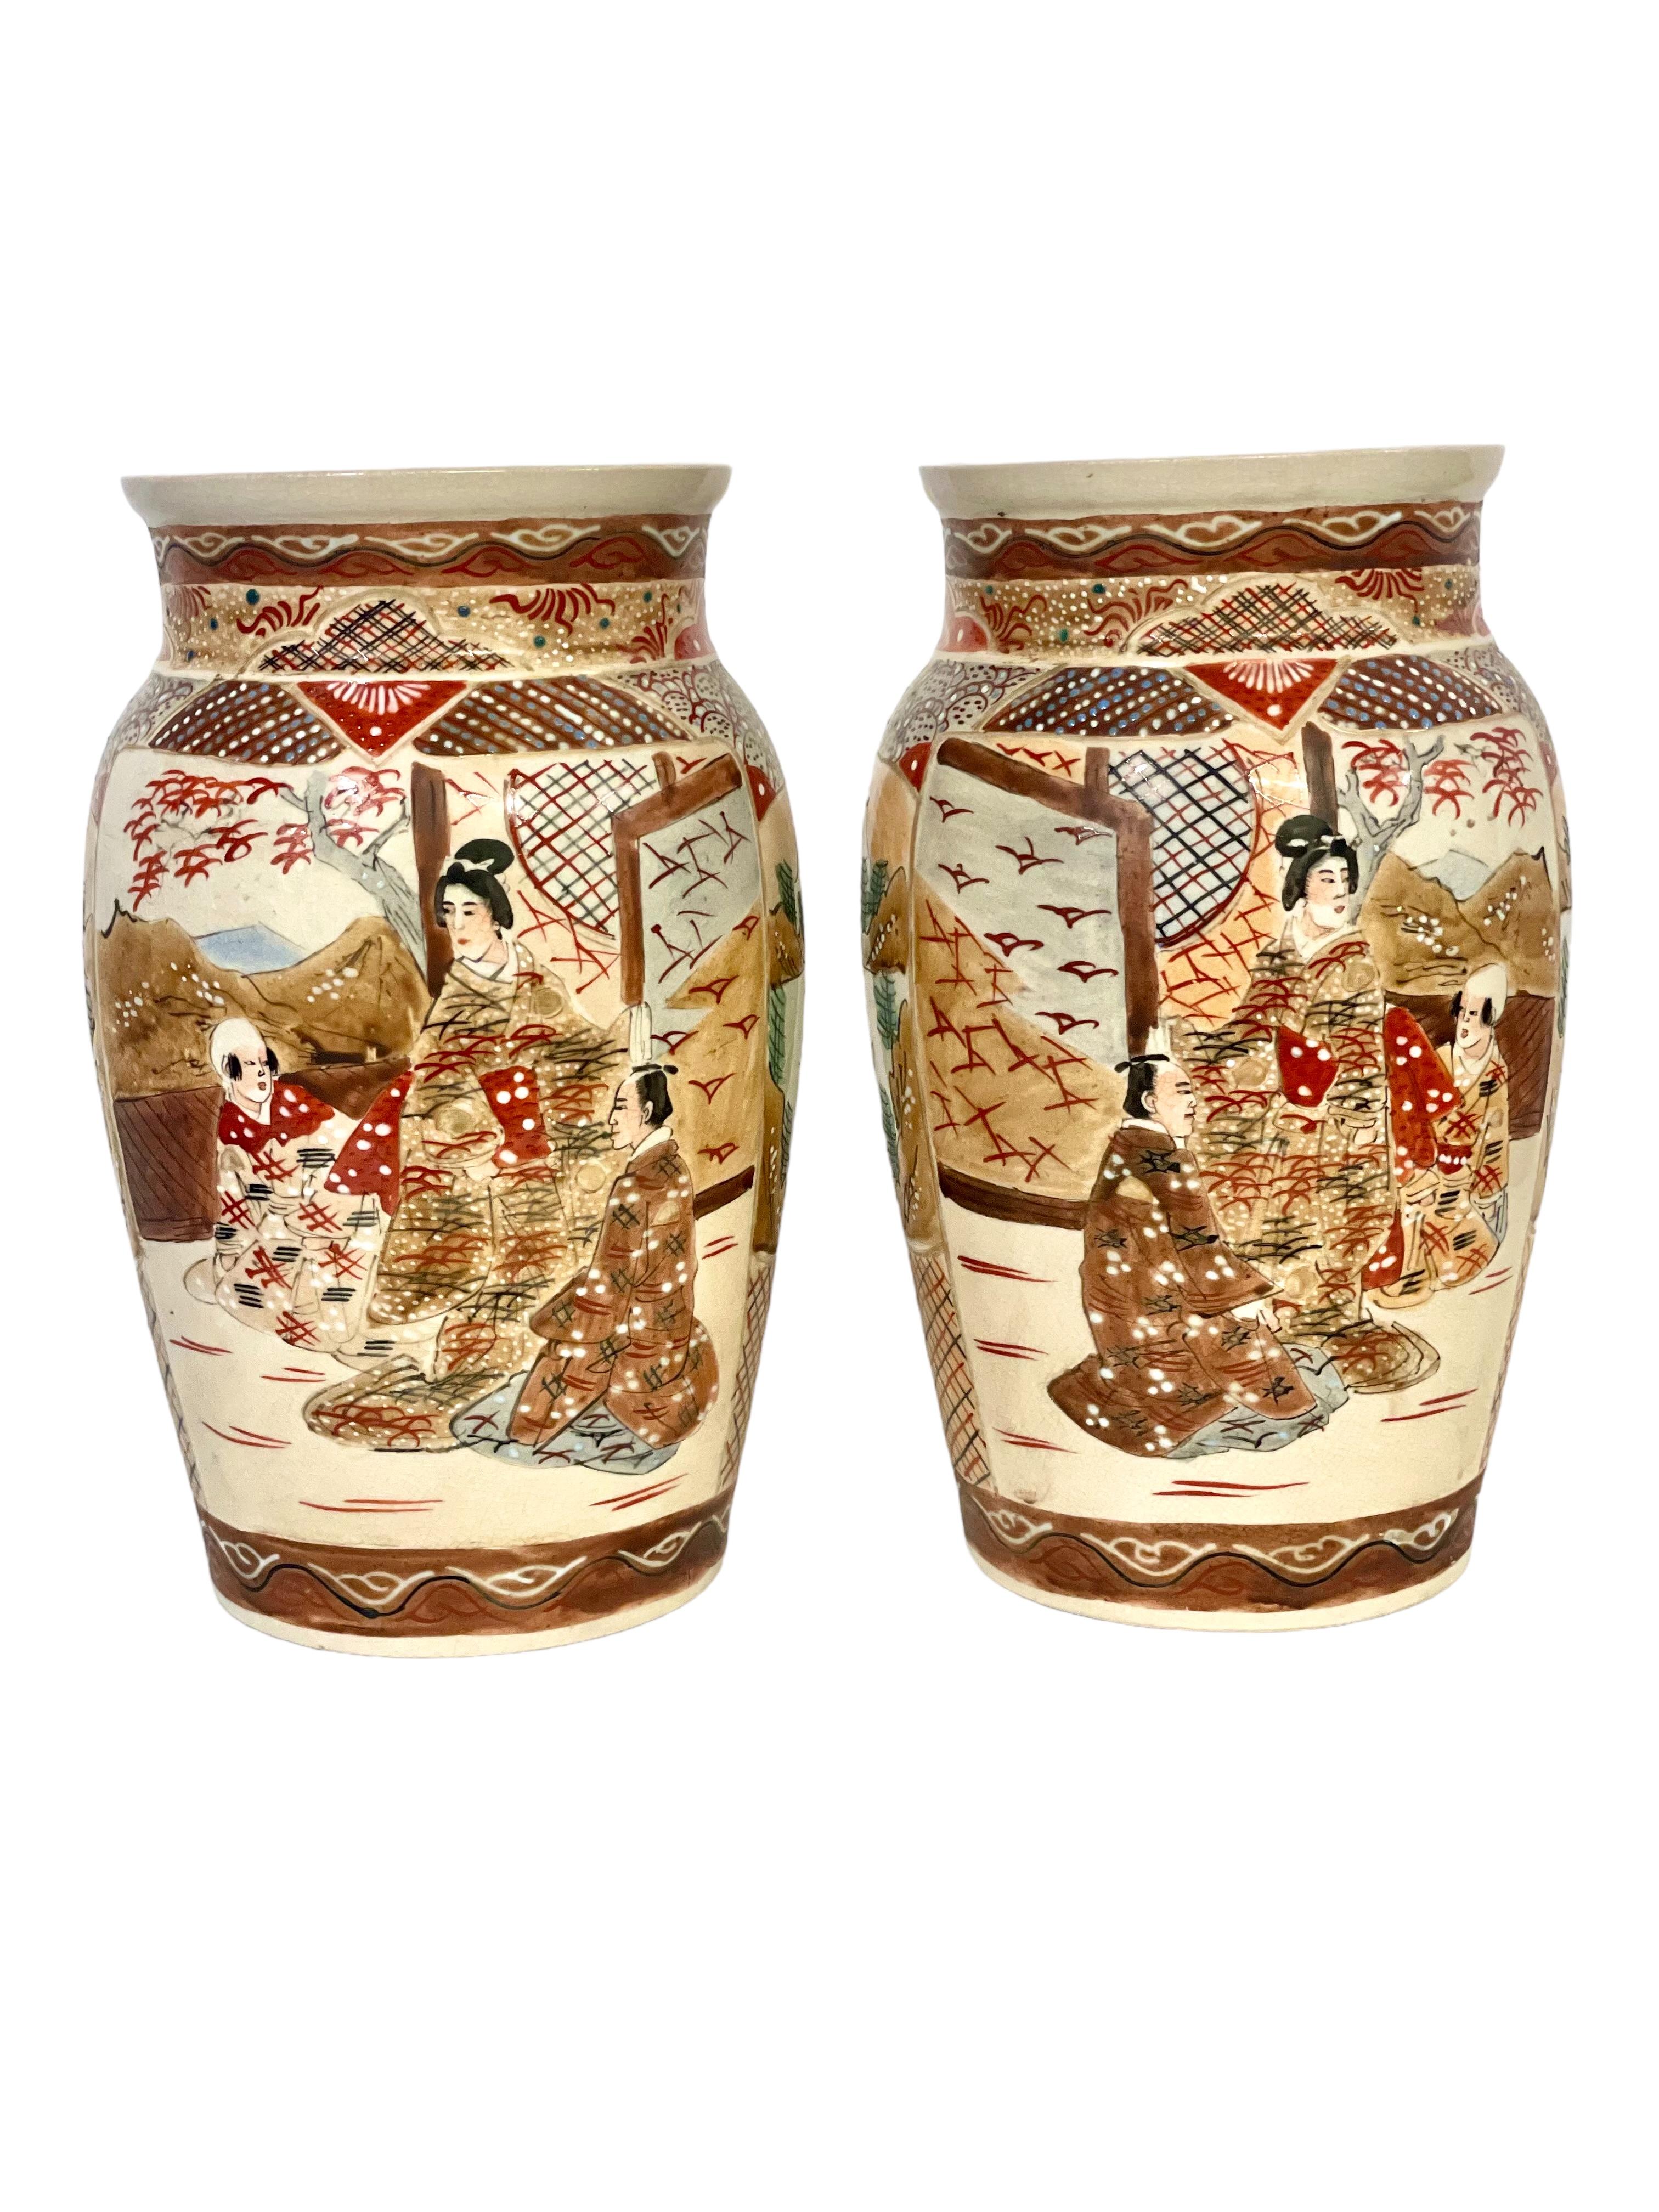 Ein feines Paar japanischer Satsuma-Steingutvasen, kunstvoll verziert in den typischen Satsuma-Farben mit Emaille und starker Vergoldung. Die Motive auf den Körpern dieser Schultervasen aus dem späten 19. oder frühen 20. Jahrhundert zeigen